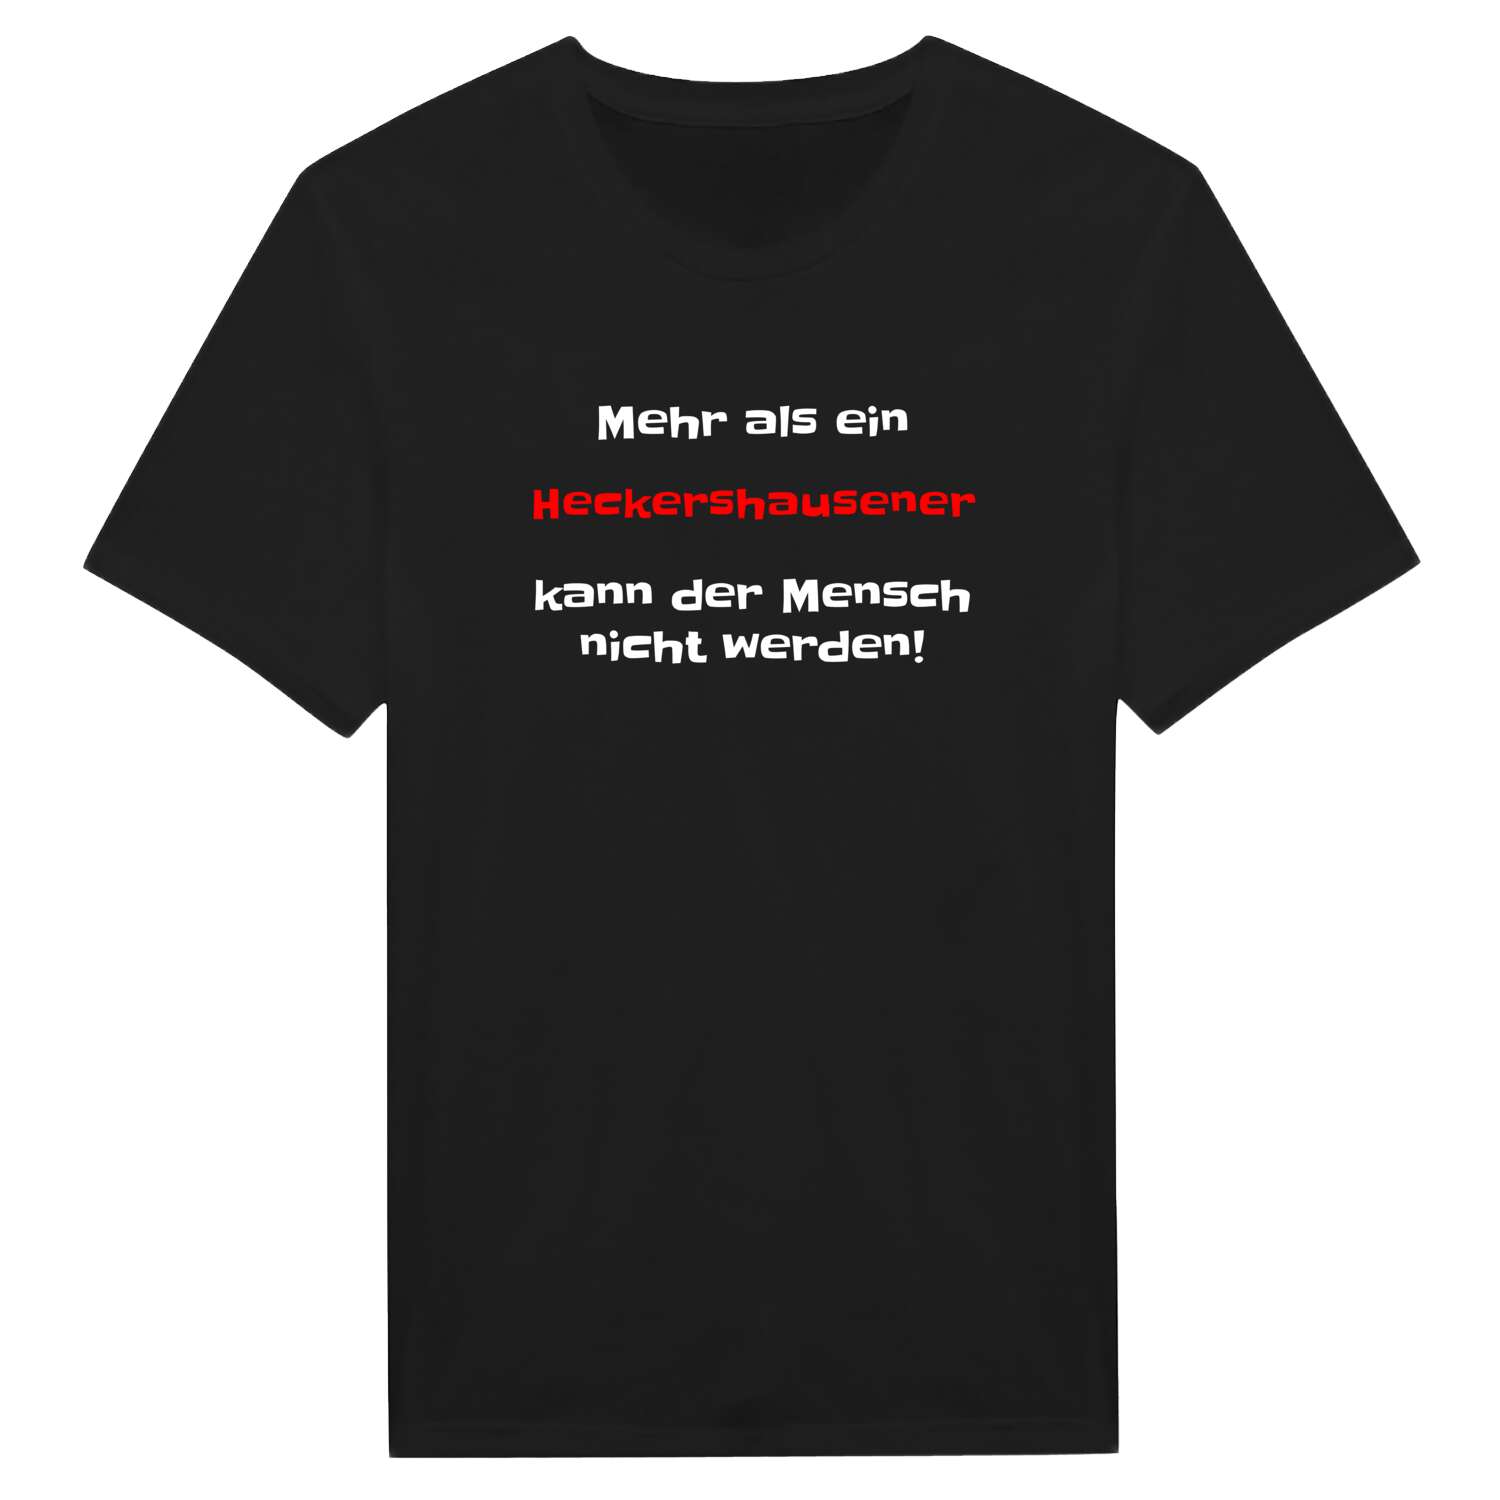 Heckershausen T-Shirt »Mehr als ein«